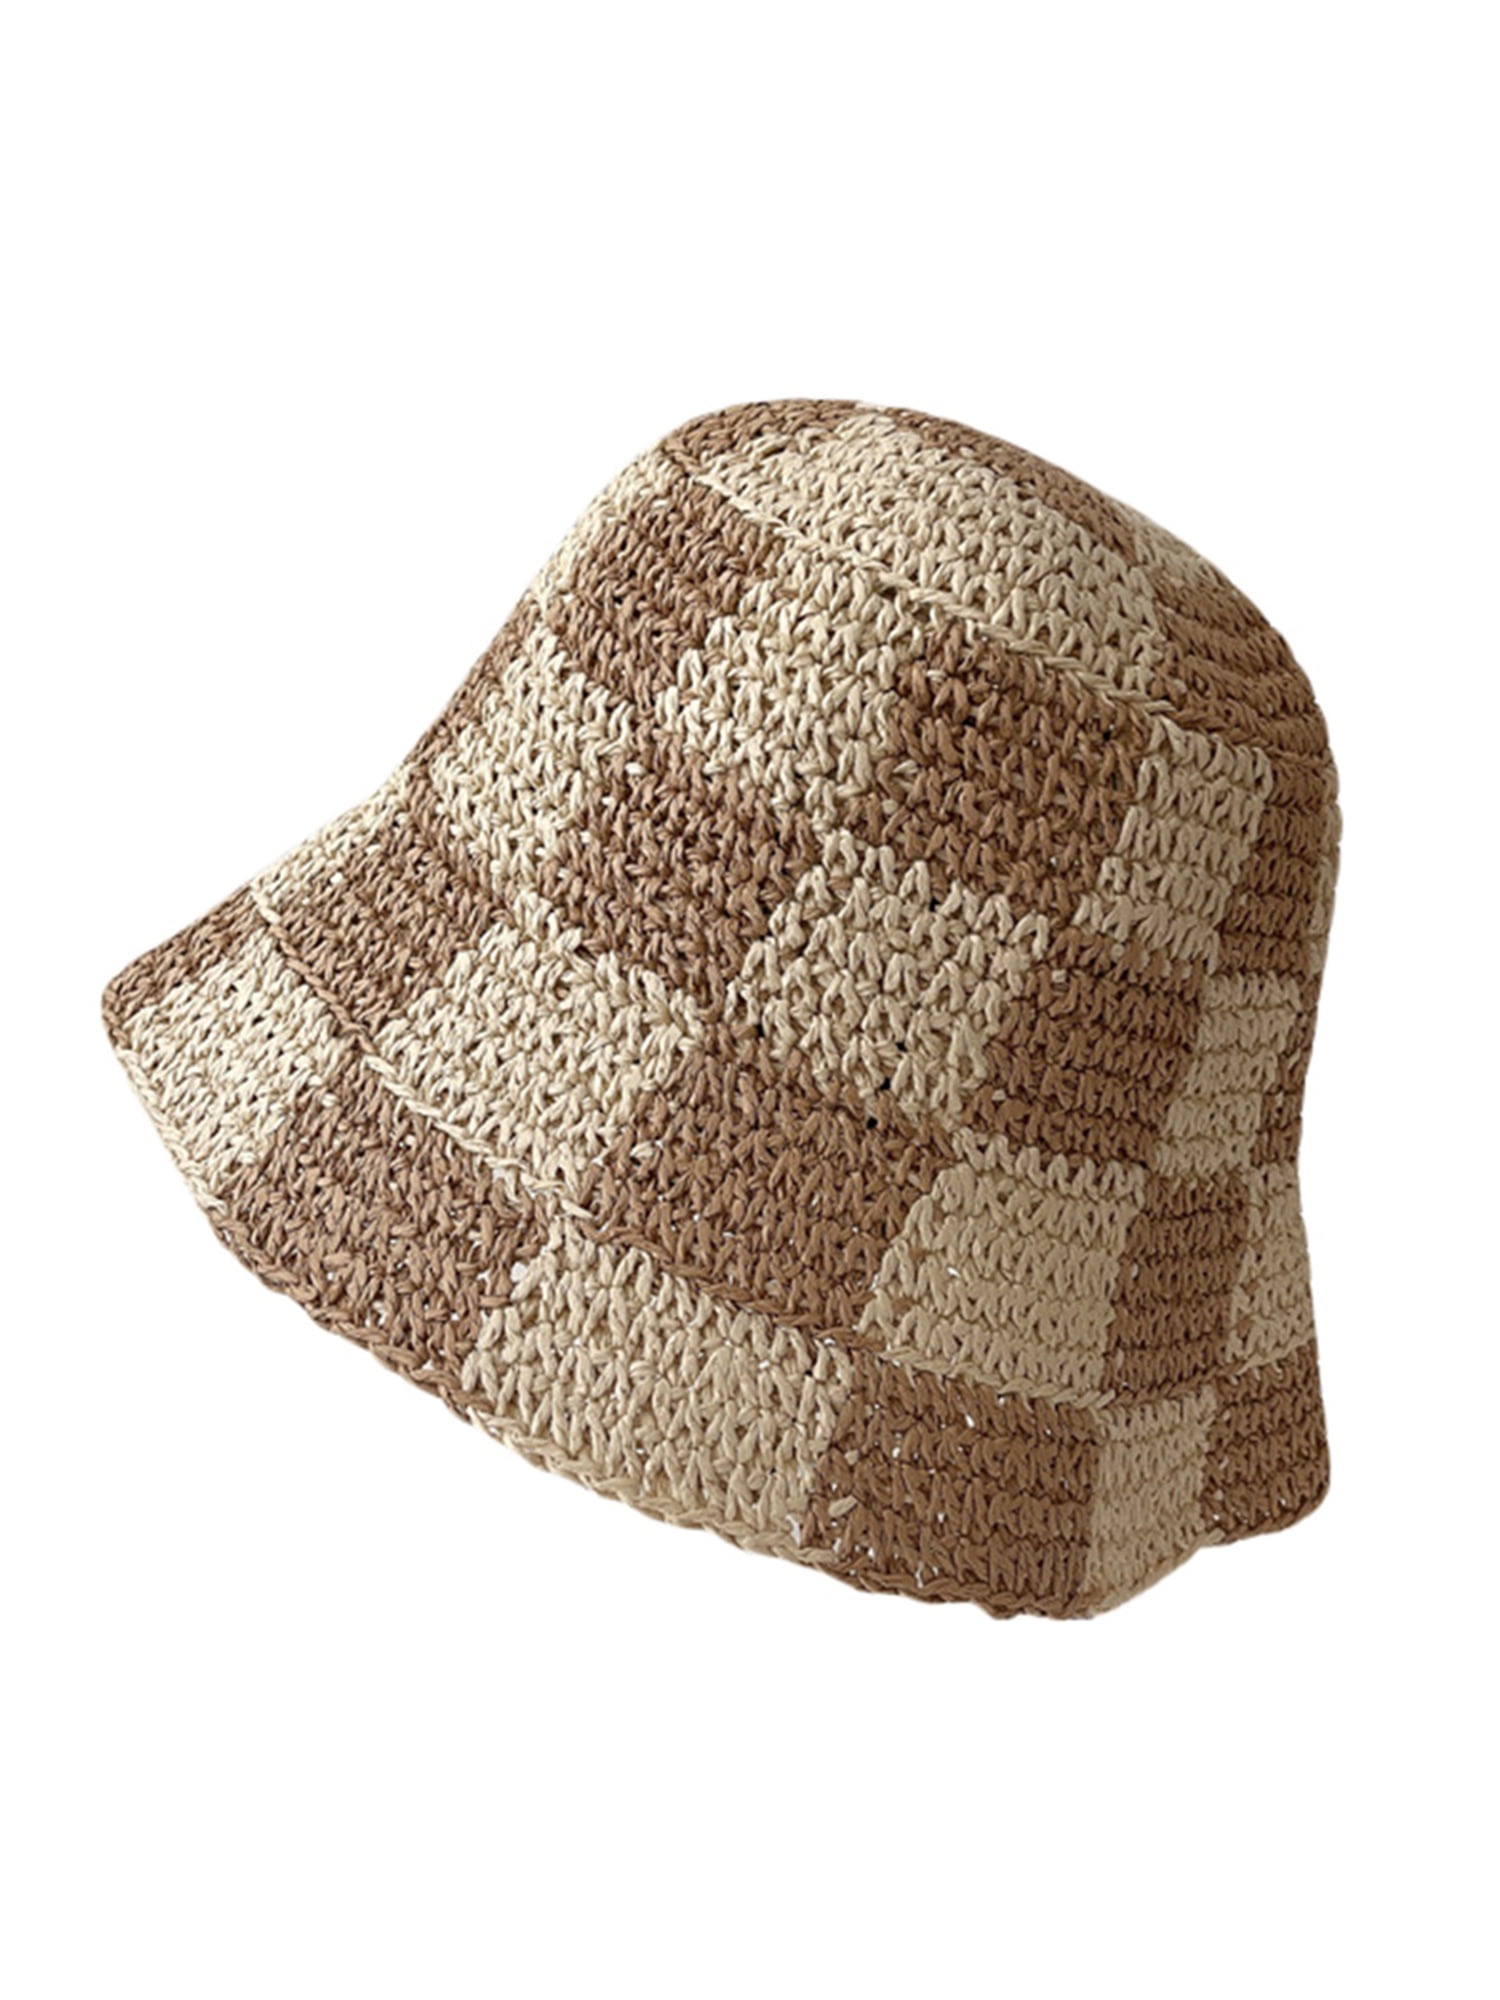 Women Crochet Bucket Hat Plaid Pattern Knitted Fisherman Hat